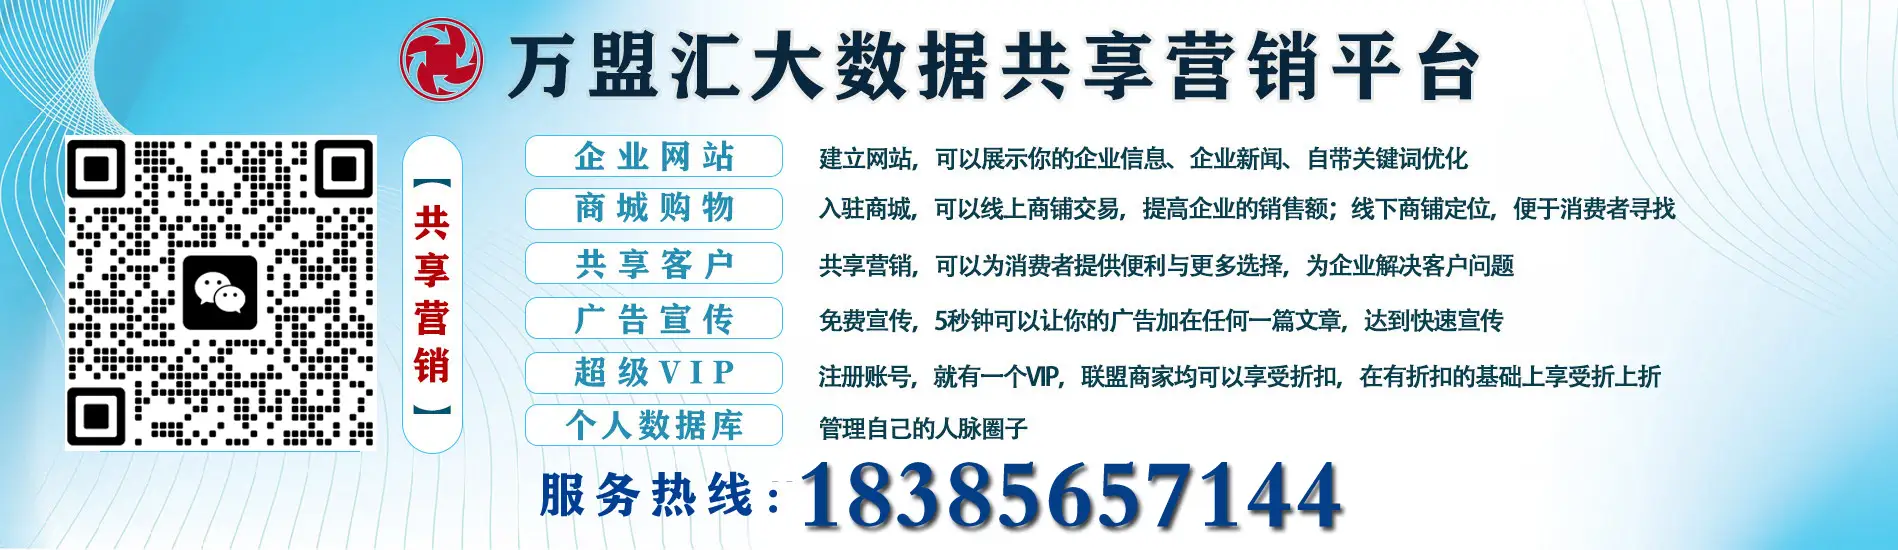 贵州吉顺信贷科技服务有限公司